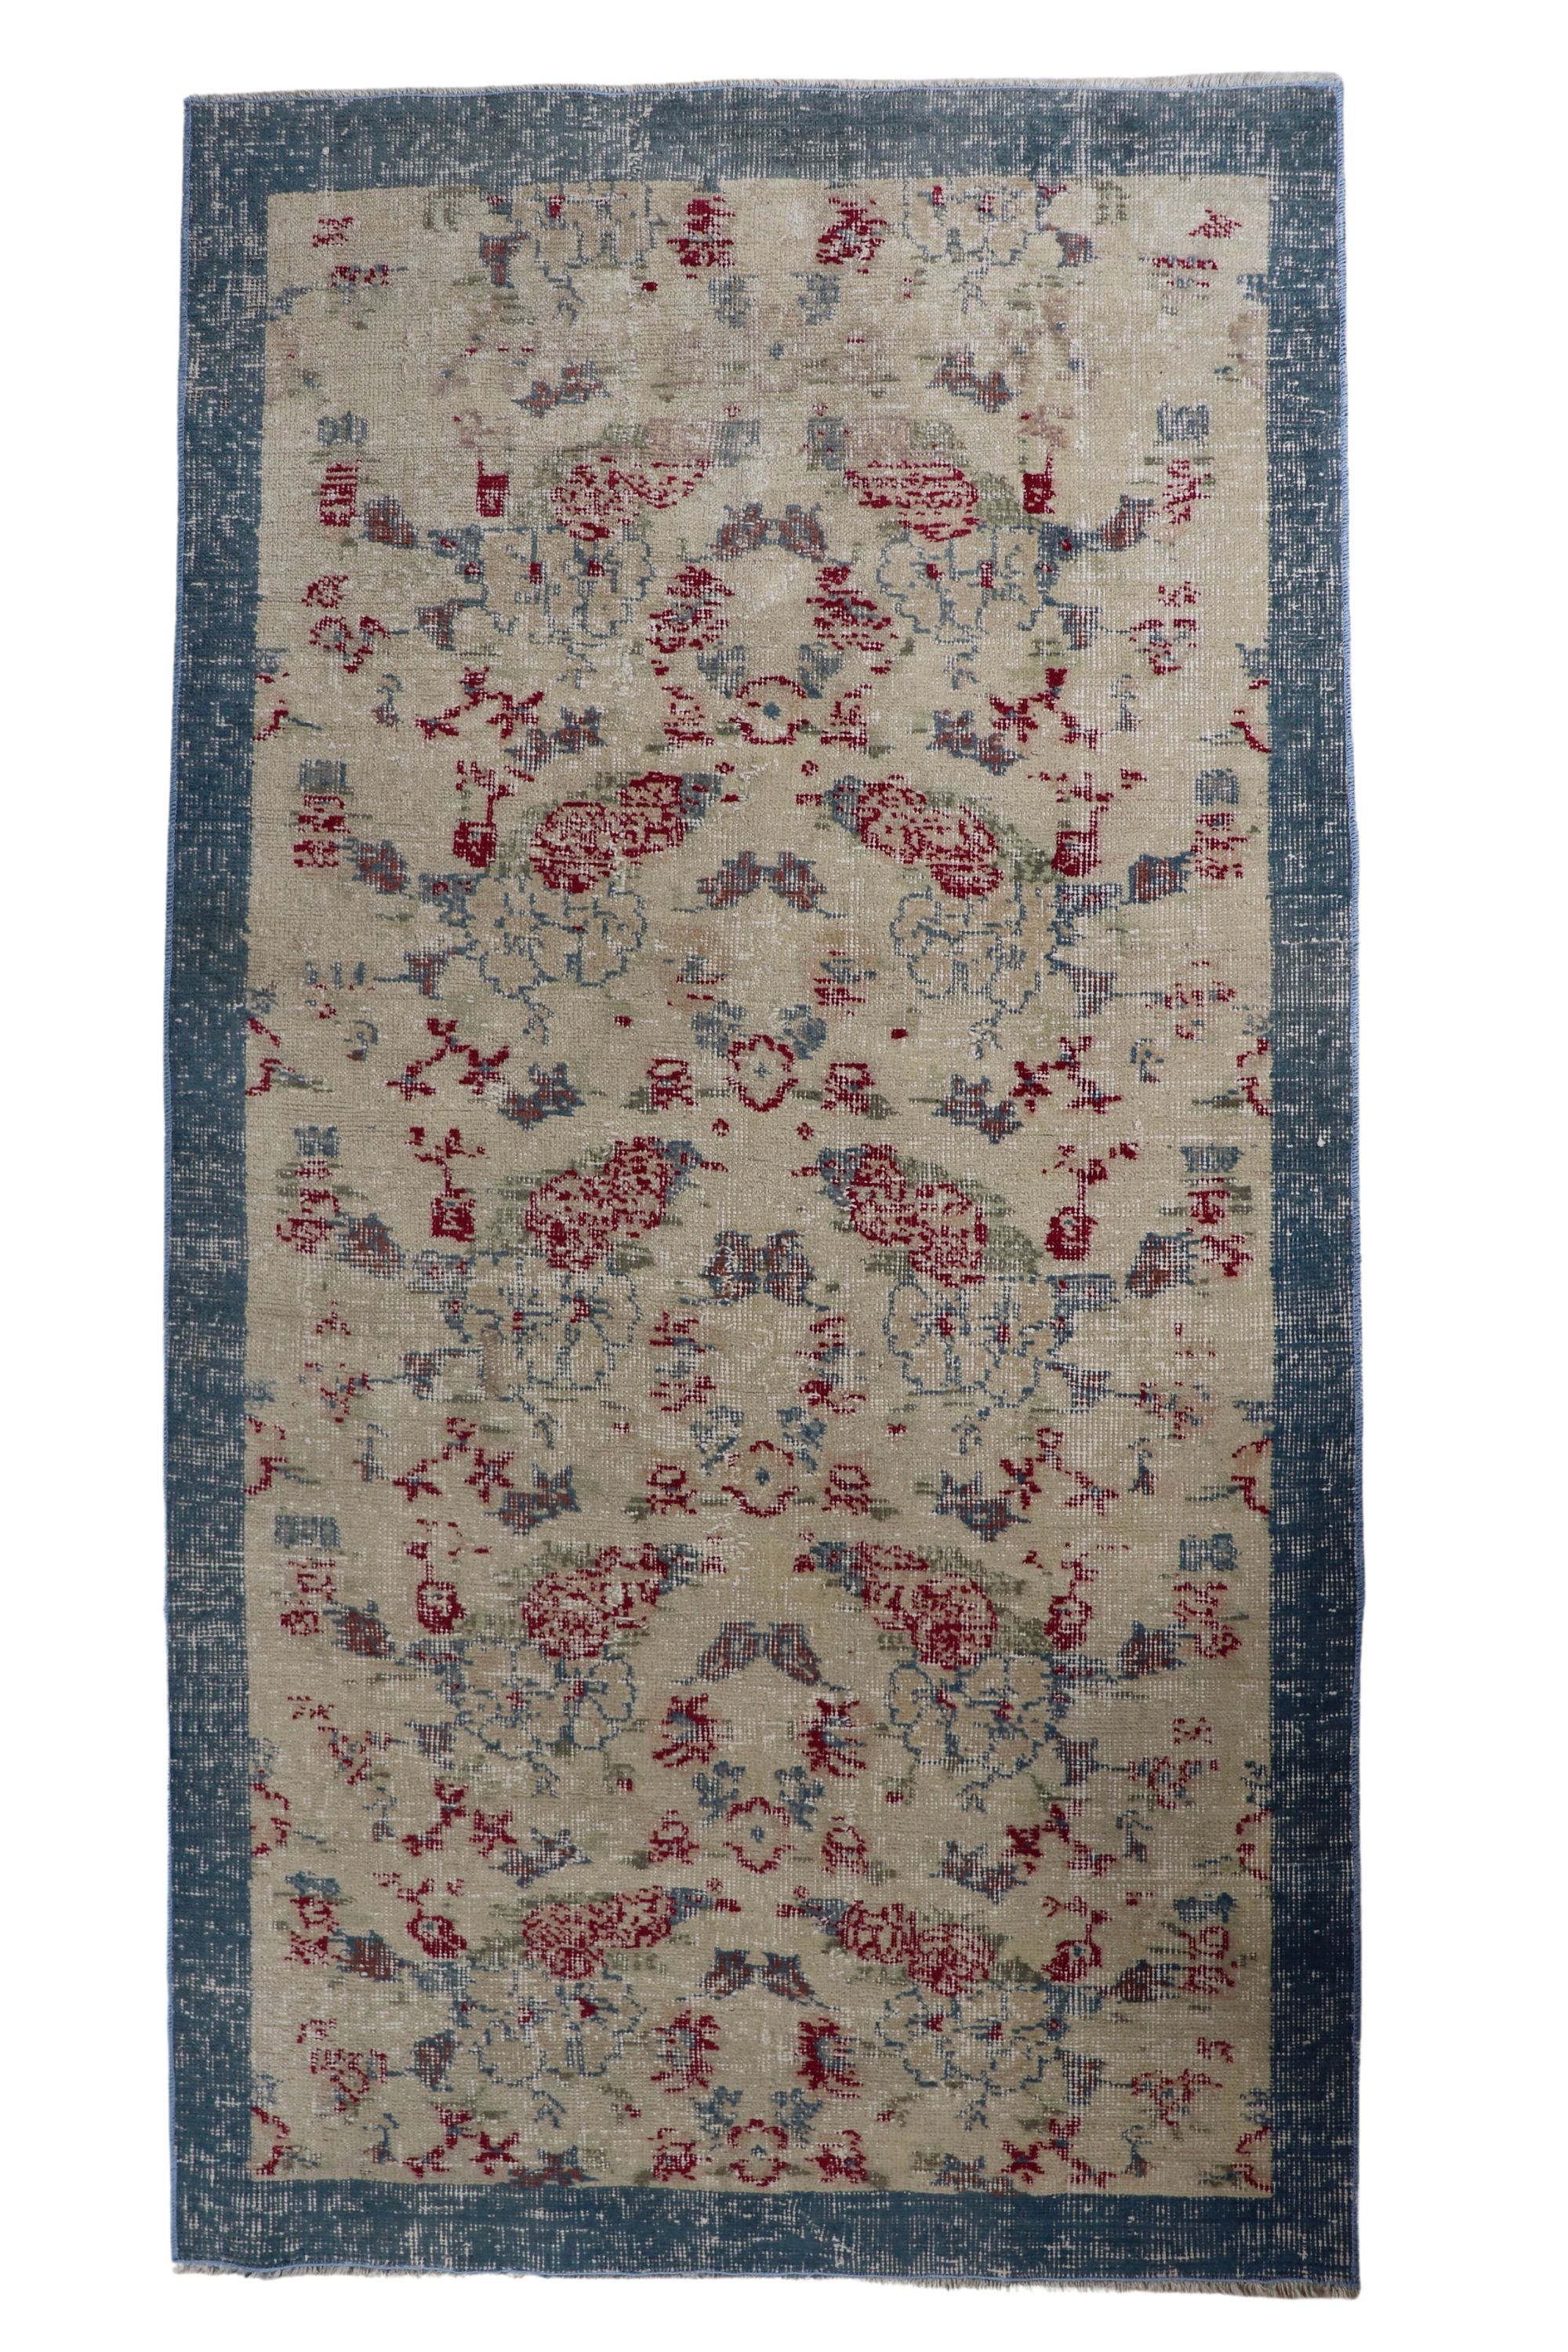 Vintage rug with blue border